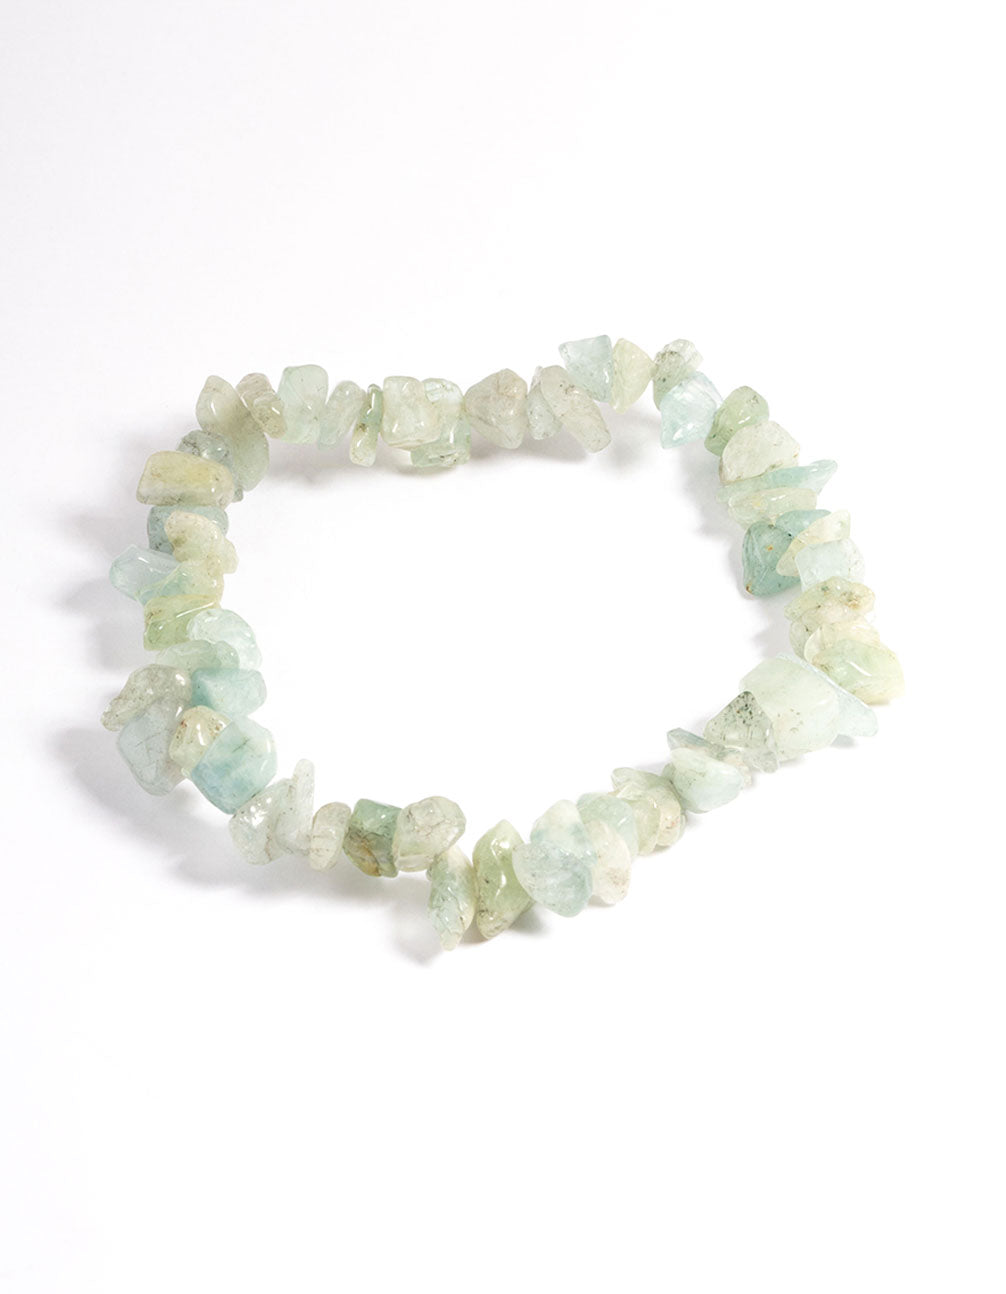 4mm natural quartz stone logo beads| Alibaba.com